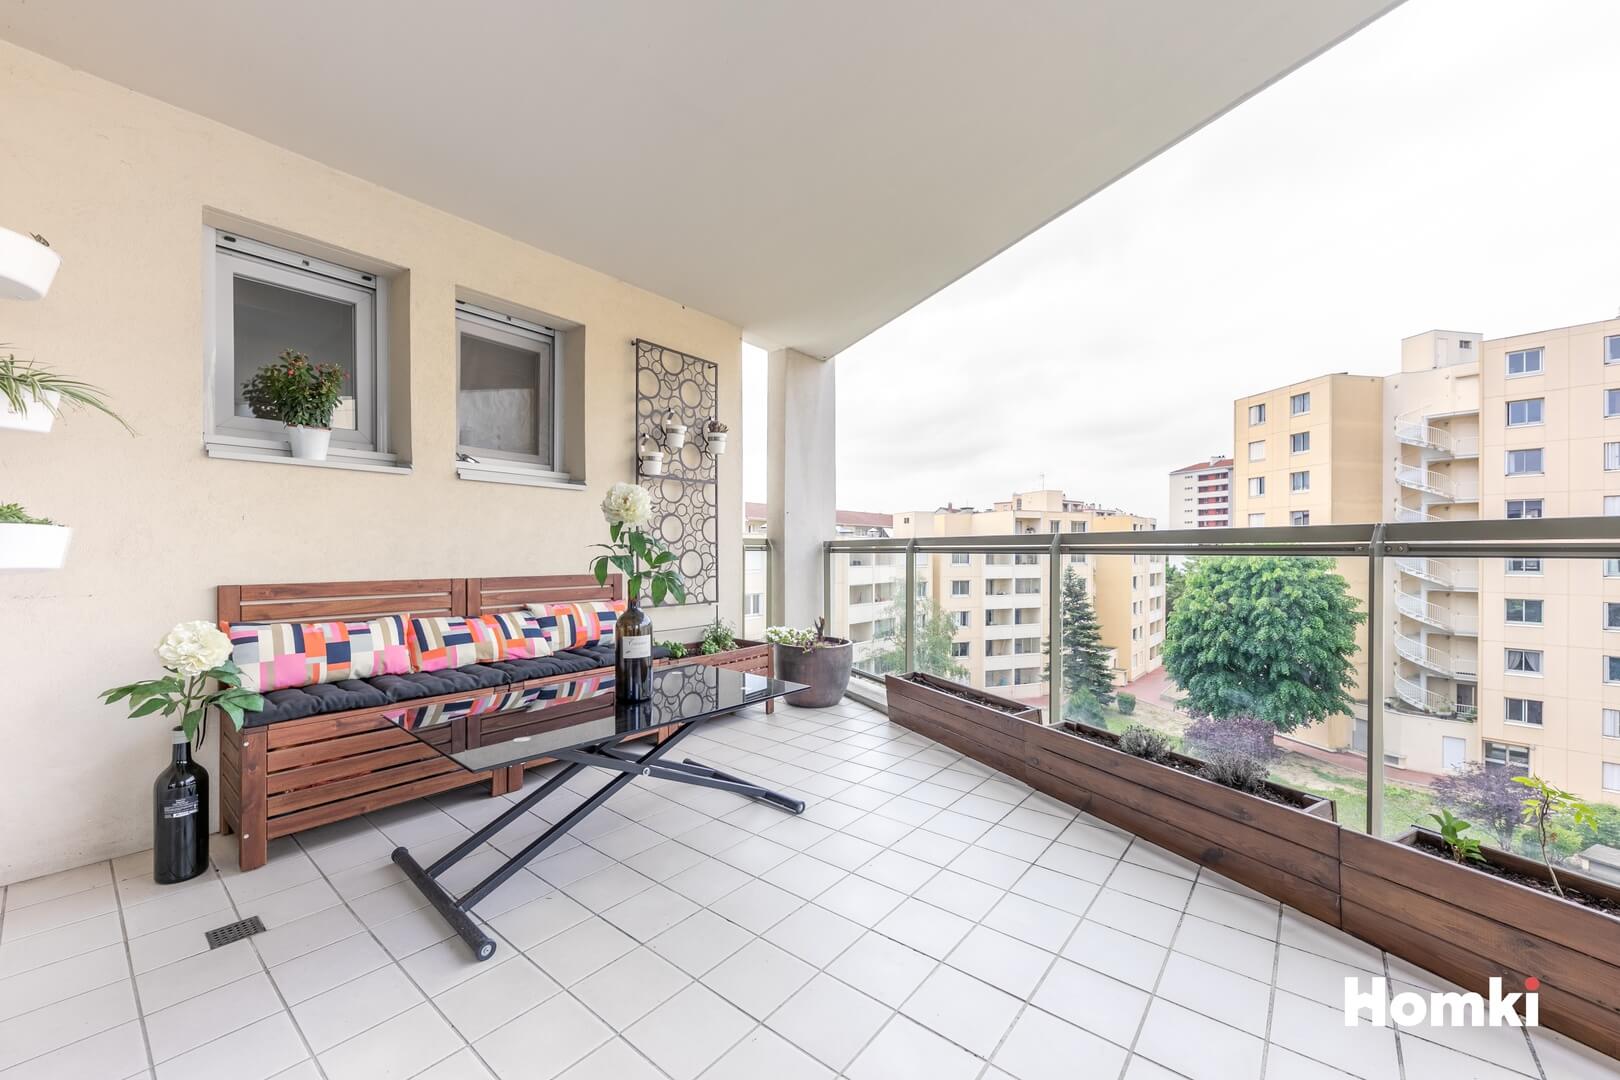 Homki - Vente Appartement  de 92.0 m² à Villeurbanne 69100